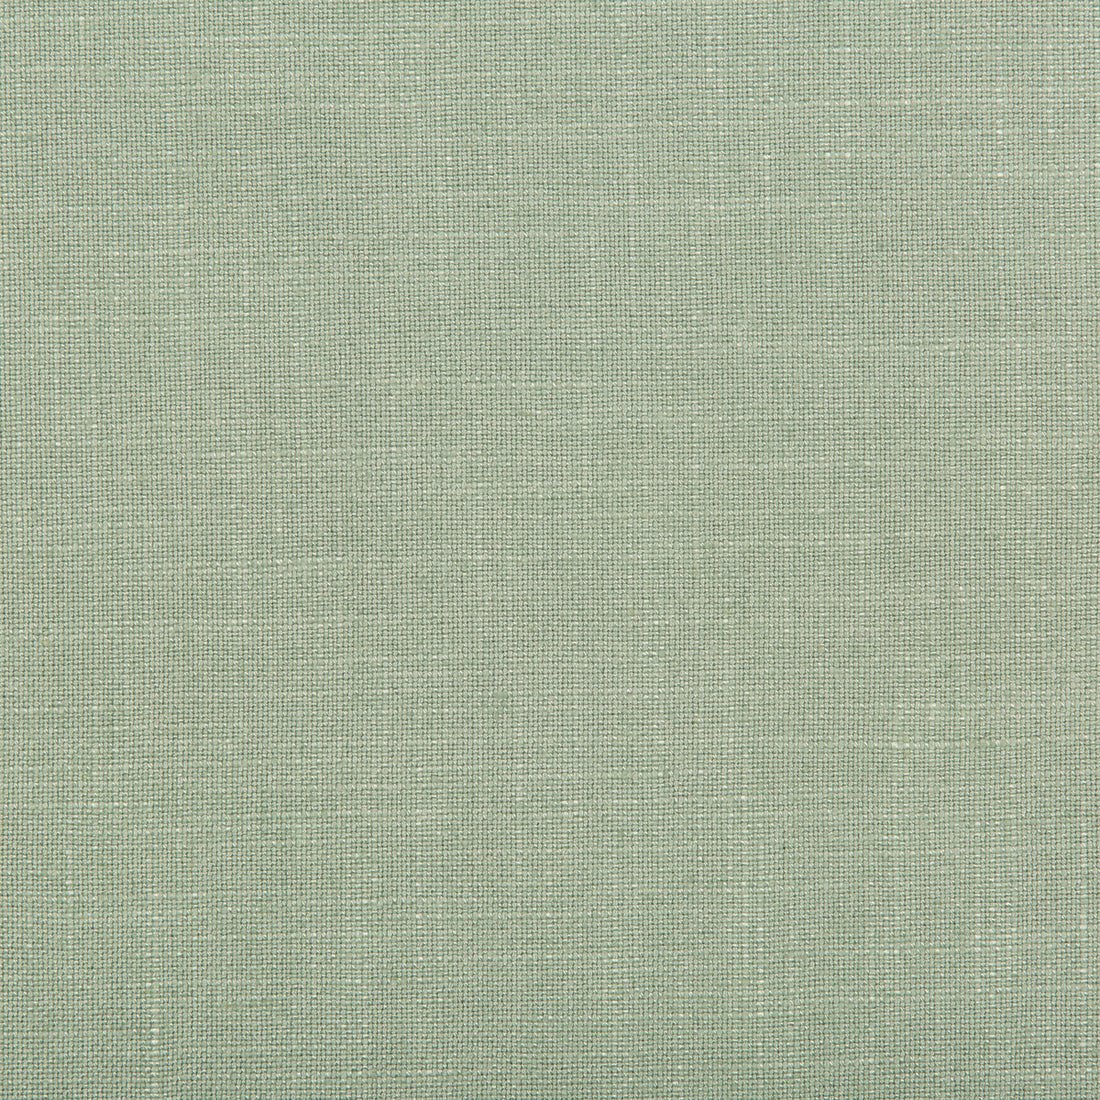 Aura fabric in glacier color - pattern 35520.123.0 - by Kravet Design